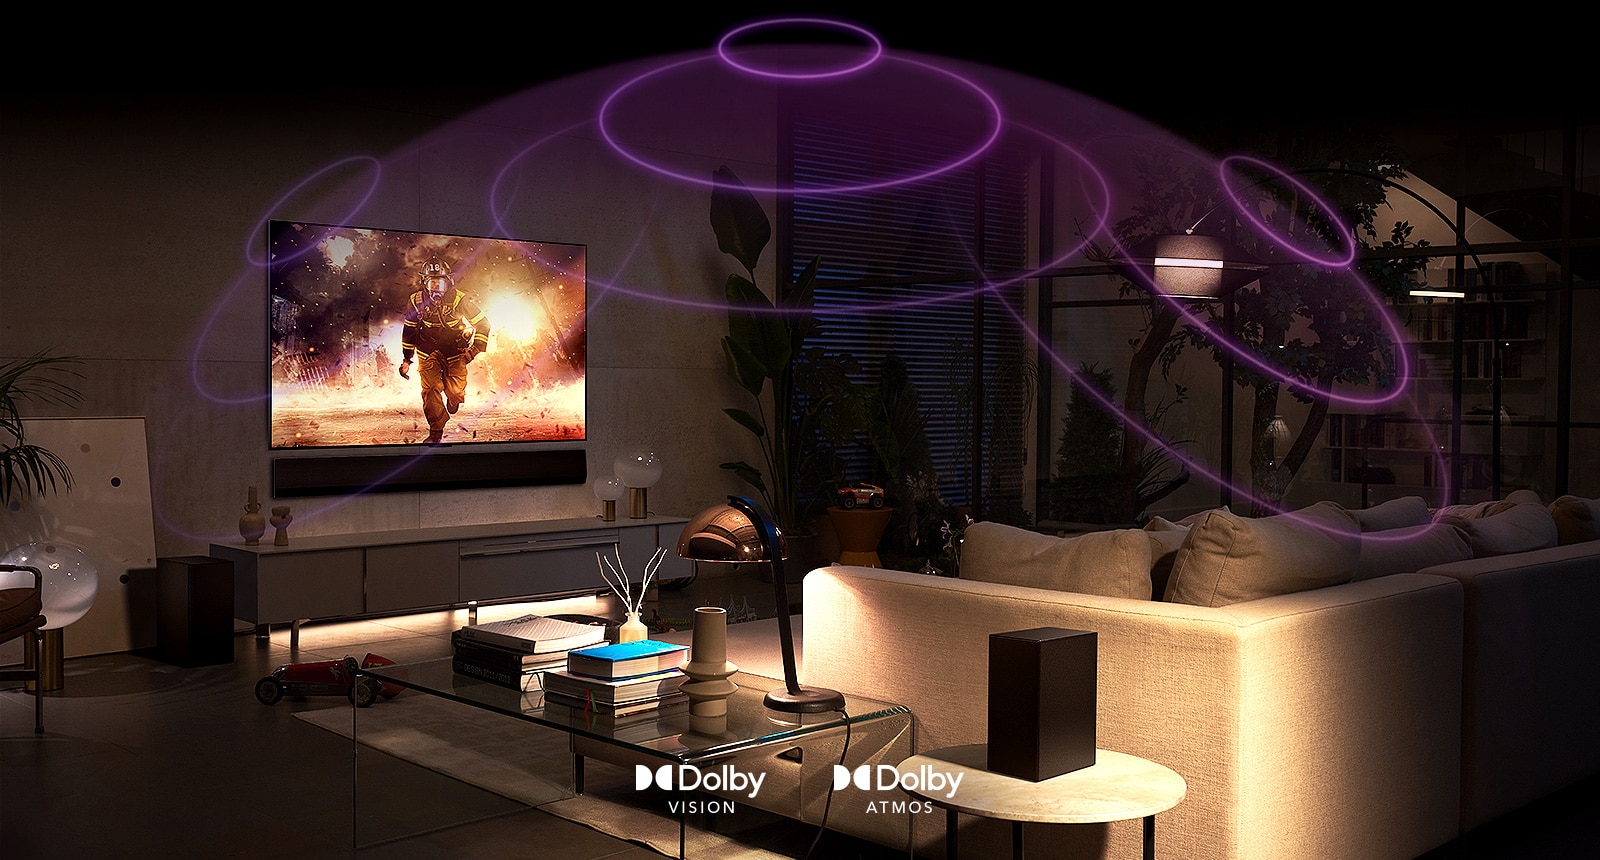 Slika televizorja LG OLED v sobi, na njem se predvaja akcijski film.  Zvočni valovi ustvarijo kupolo med sedežno garnituro in televizorjem ter tako opišejo vseobsegajoč prostorski zvok.